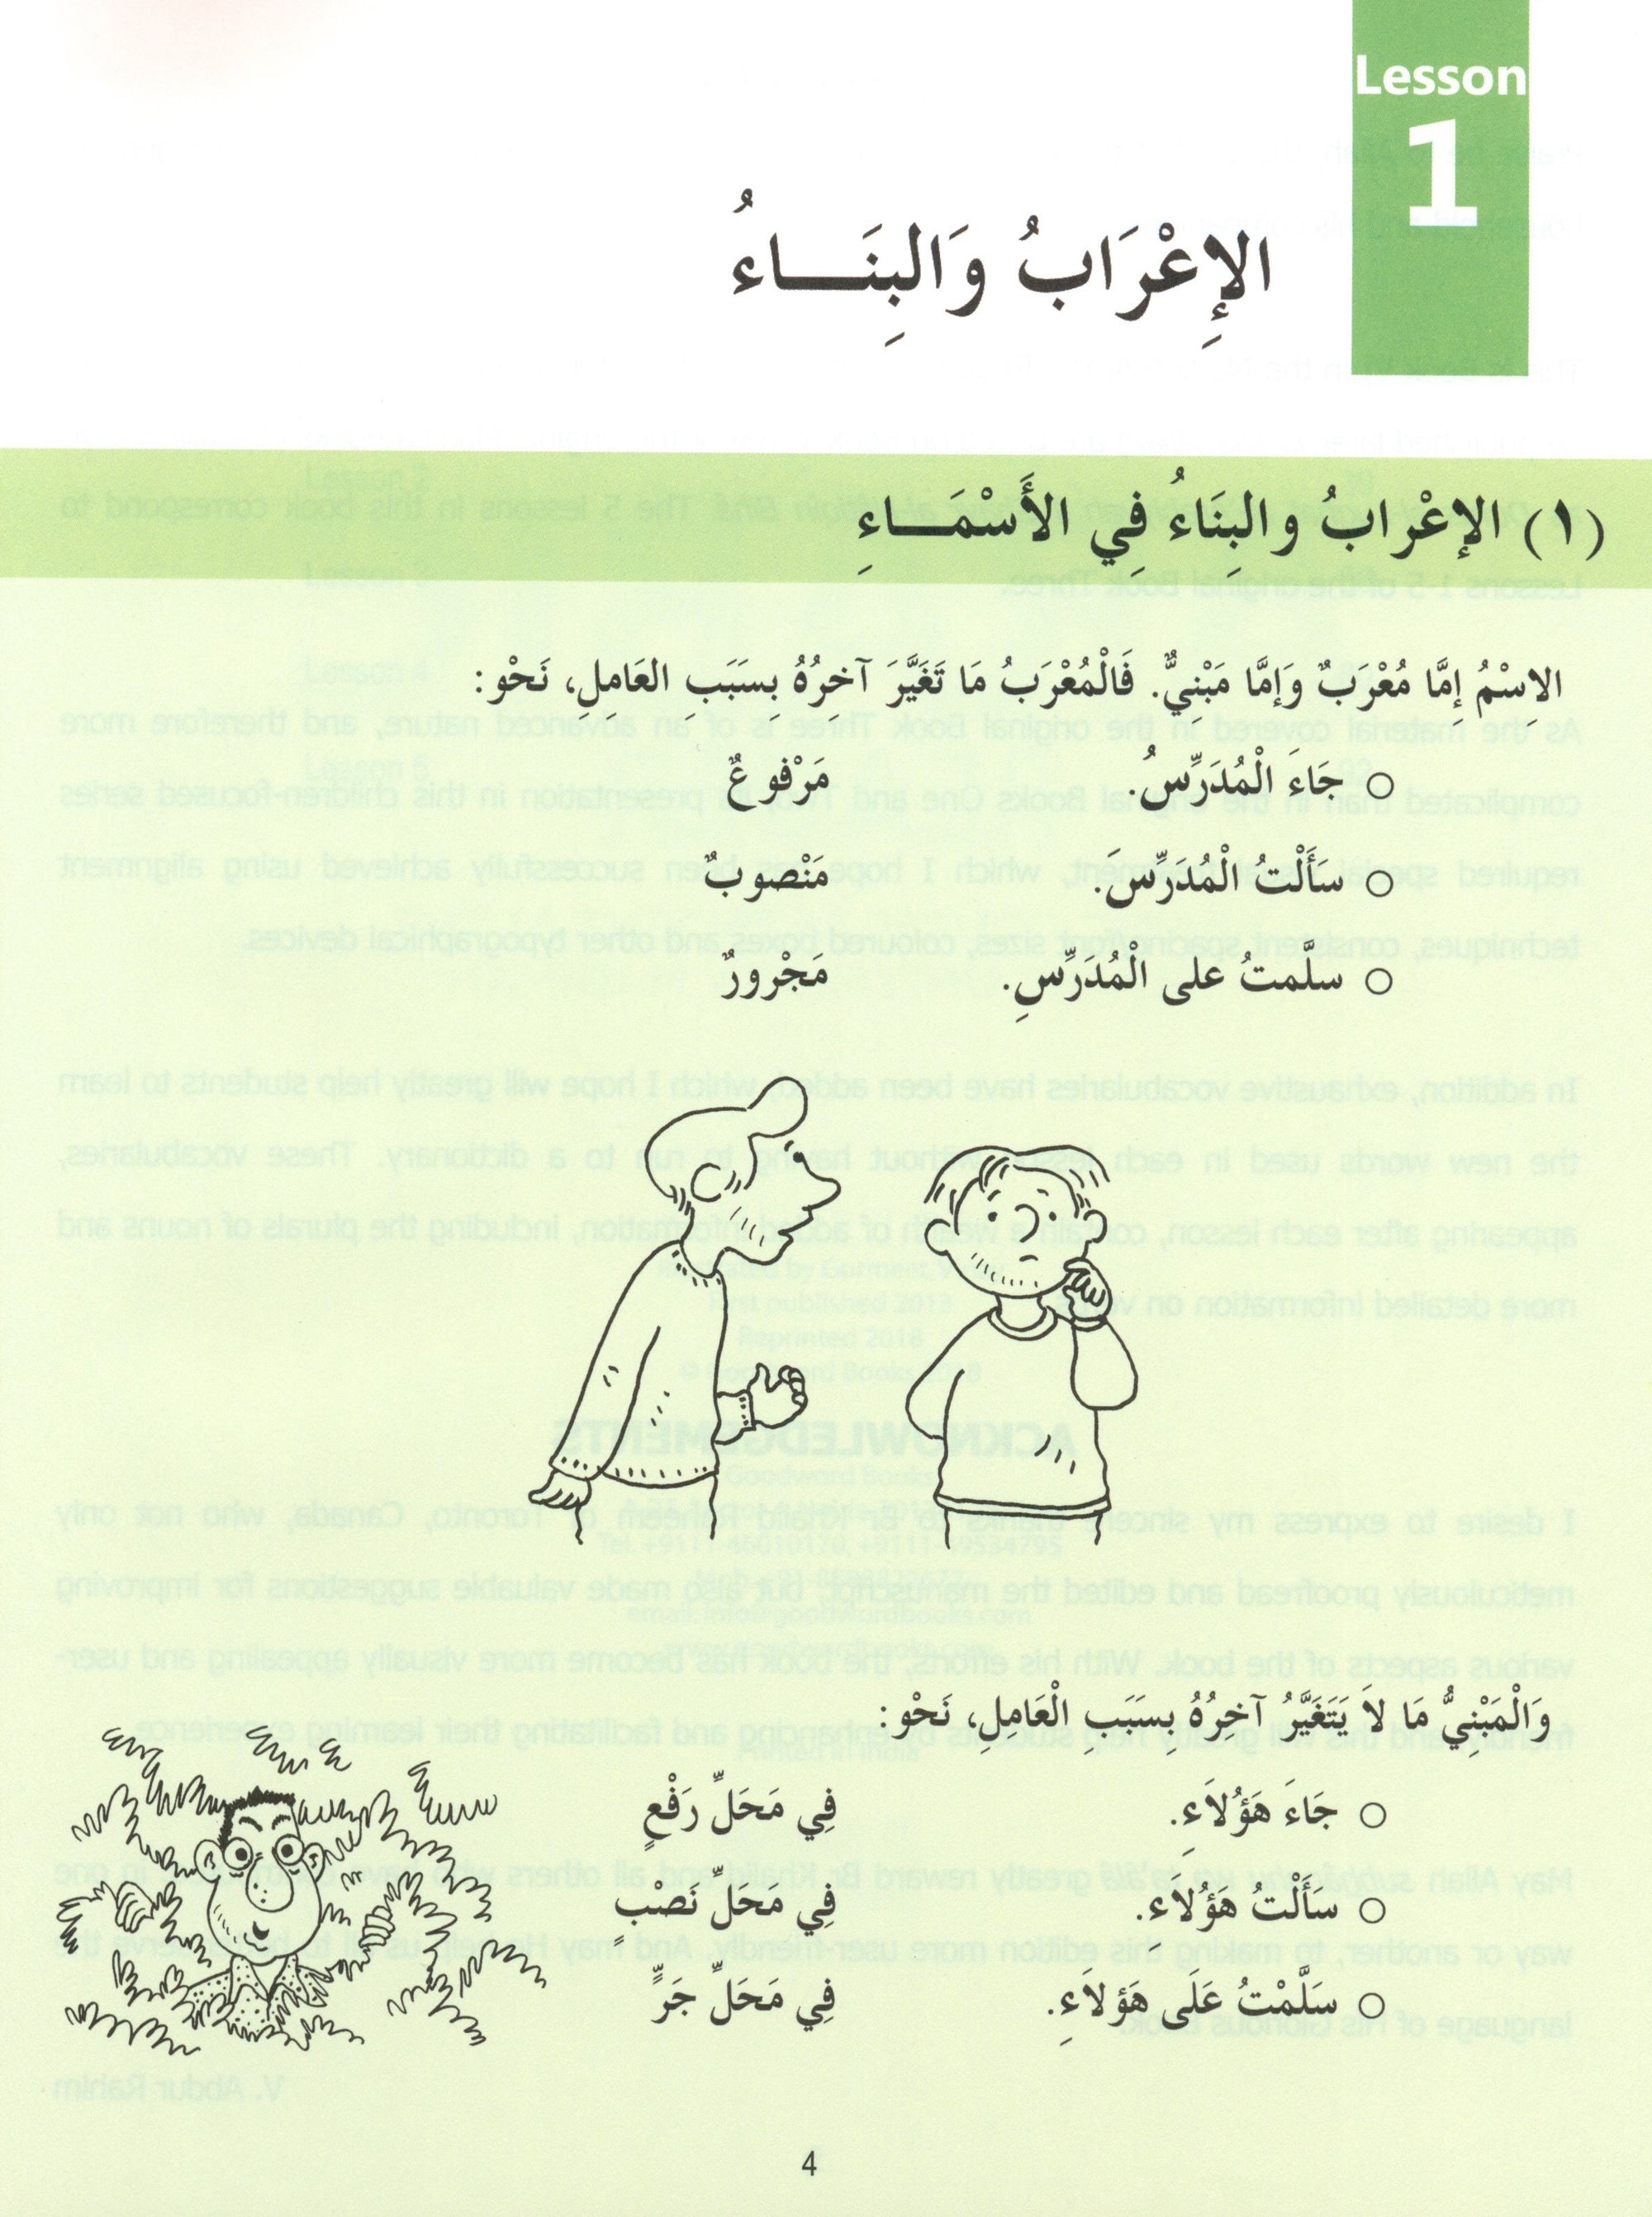 Madinah Arabic Reader Book 6